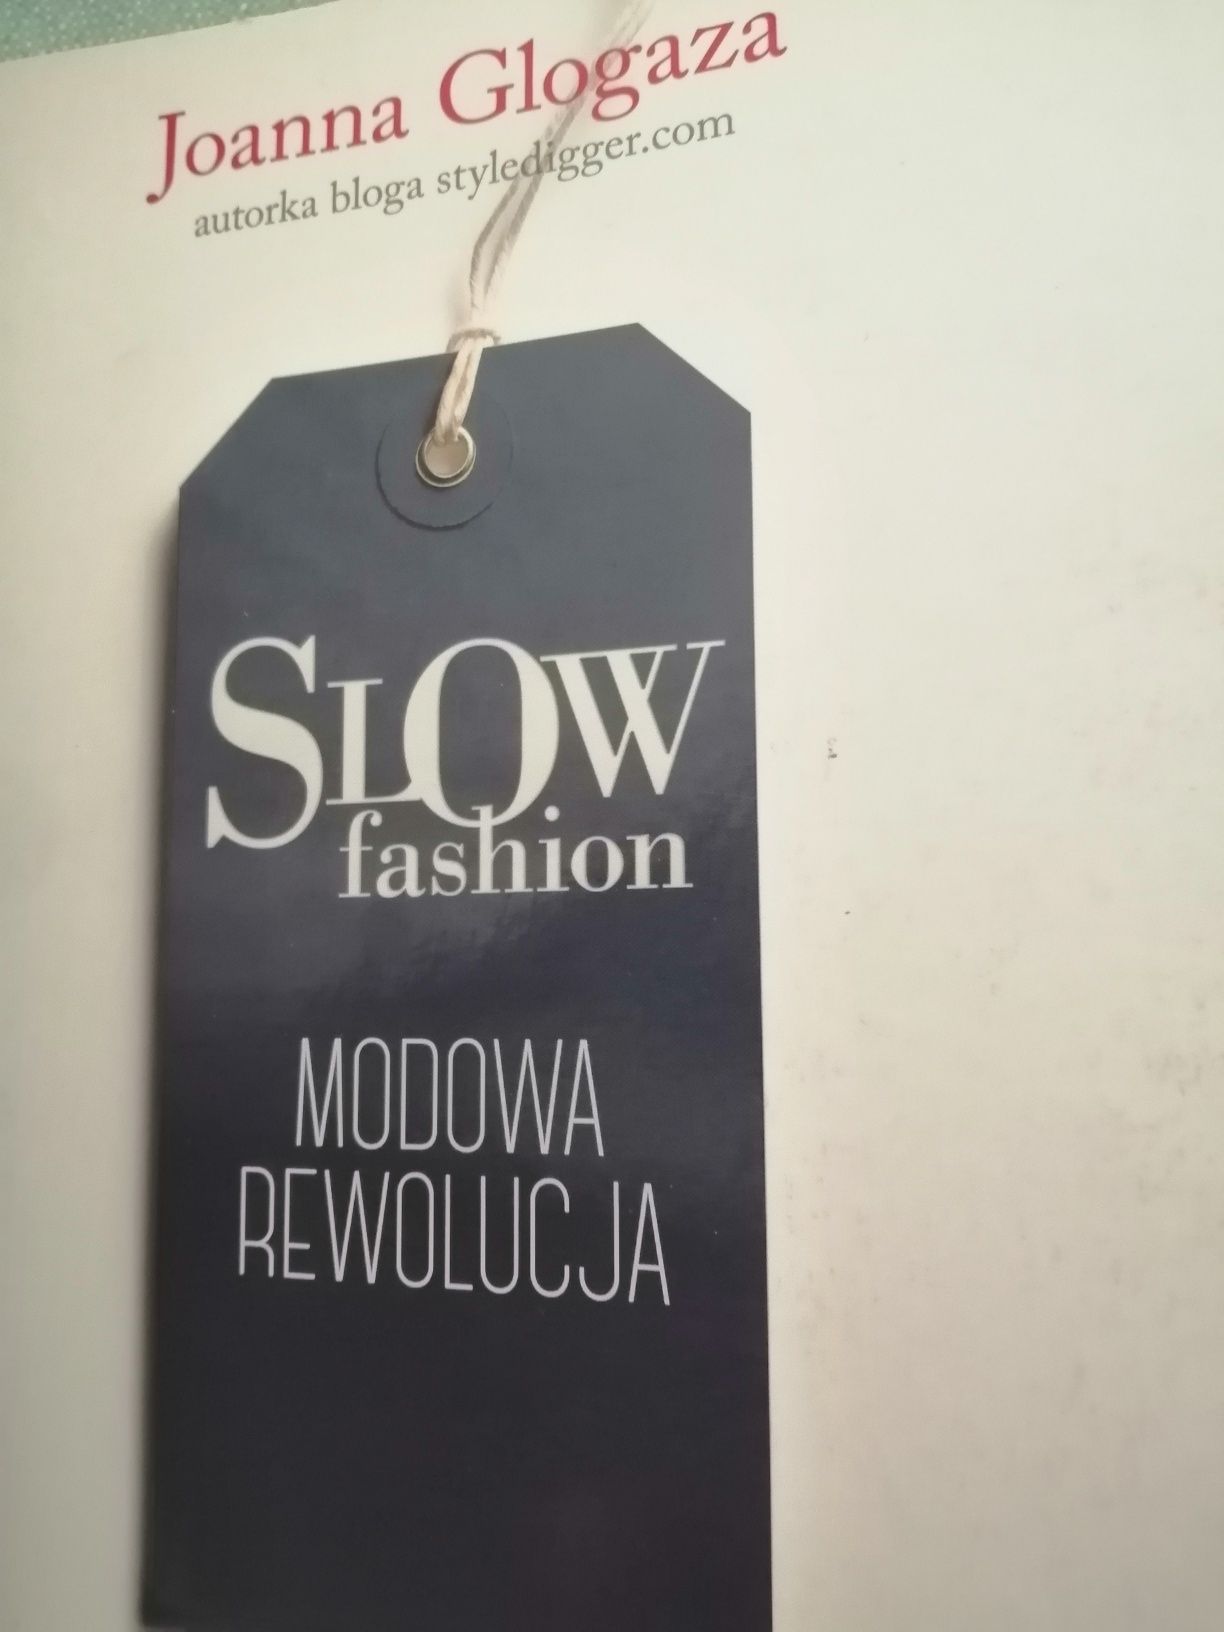 Slow fashion modowa rewolucja J. Glogaza blog styl